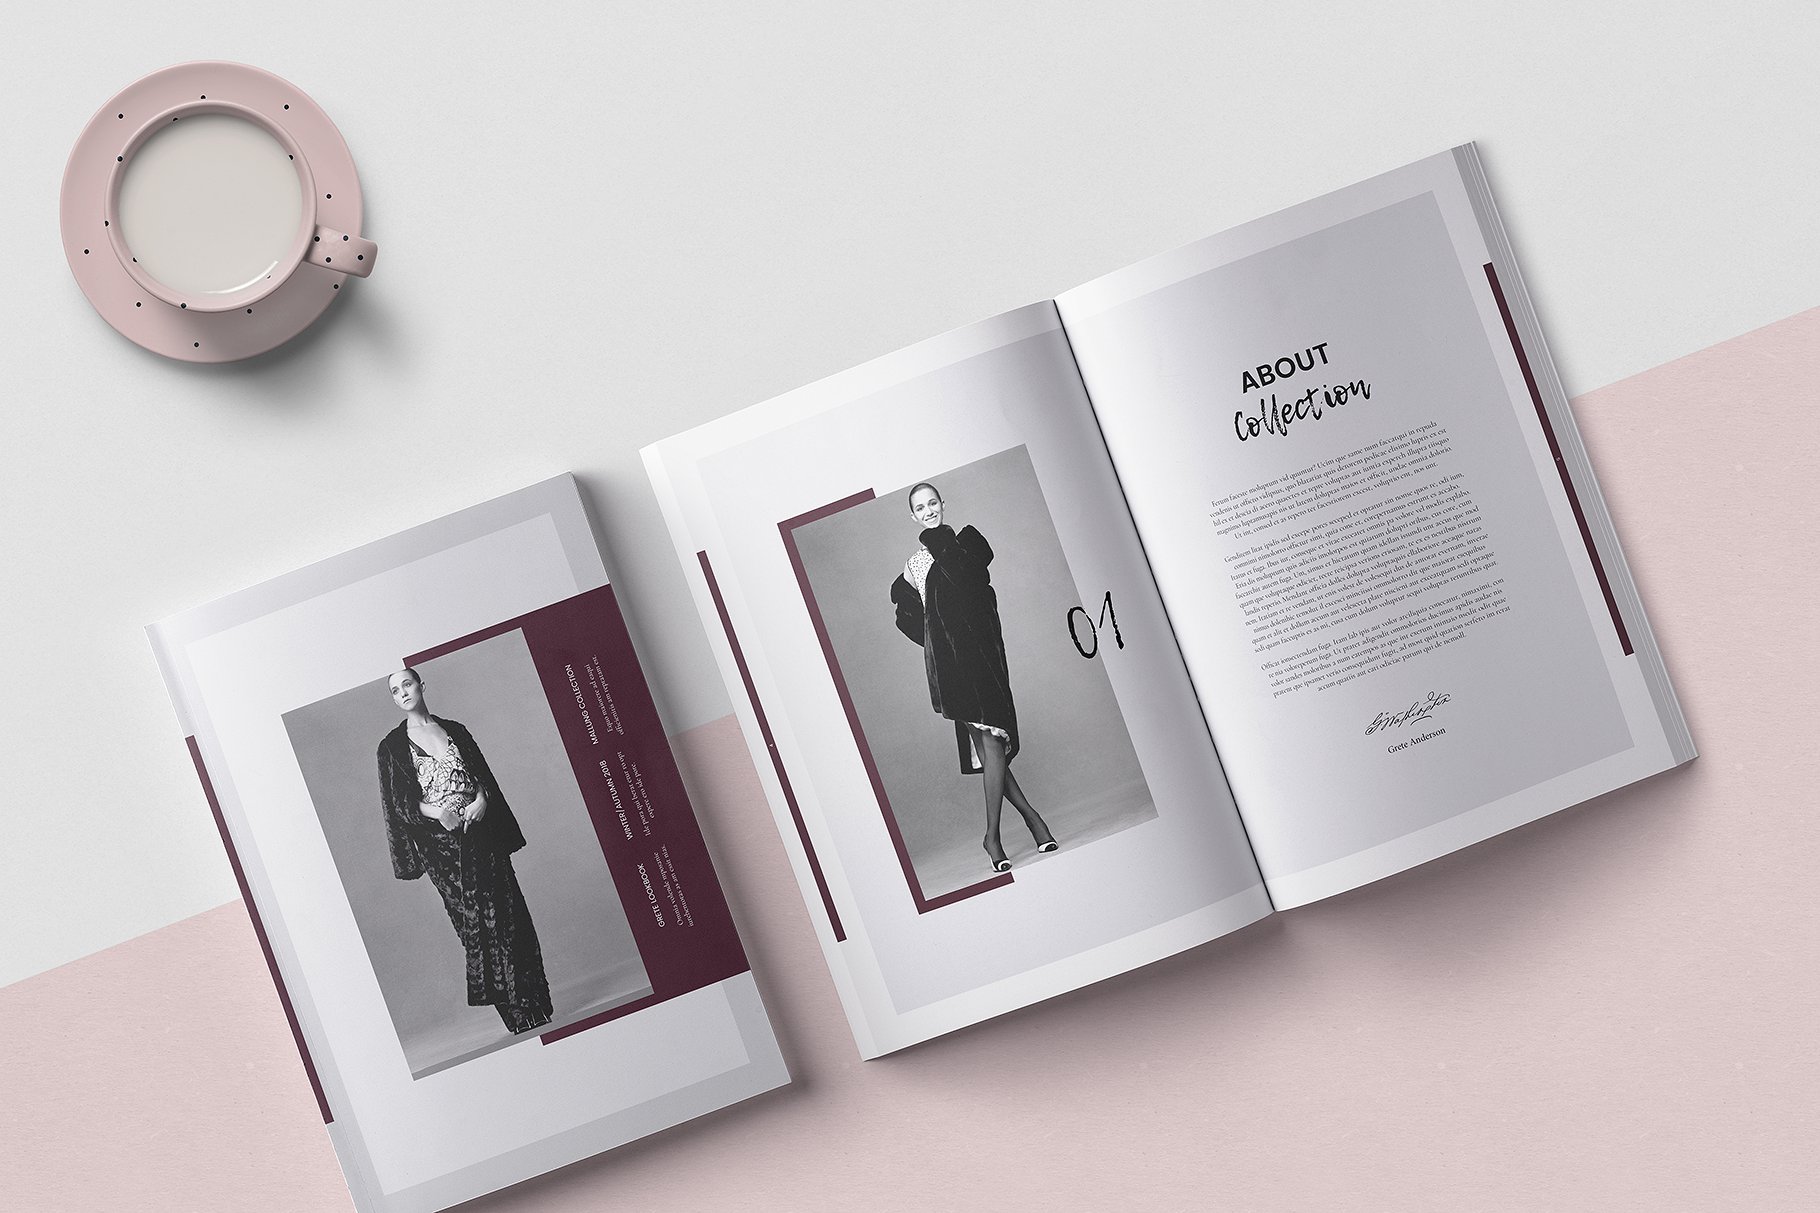 时尚优雅的女性服装A4画册模板 Modern Elegant Women’s Clothing A4 Album Template插图1